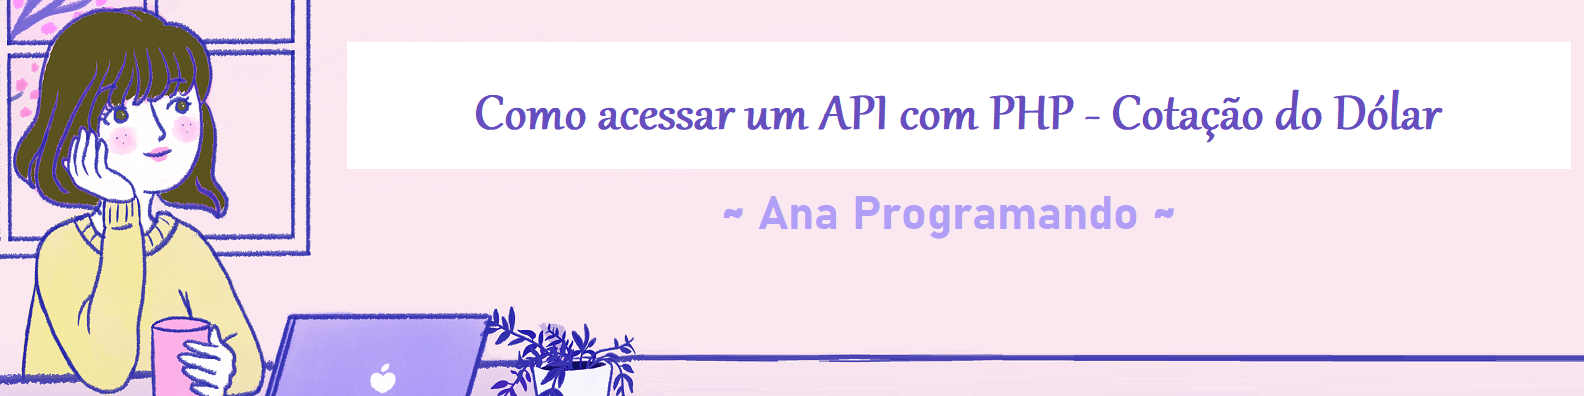 banner_Acesso-API-com-PHP